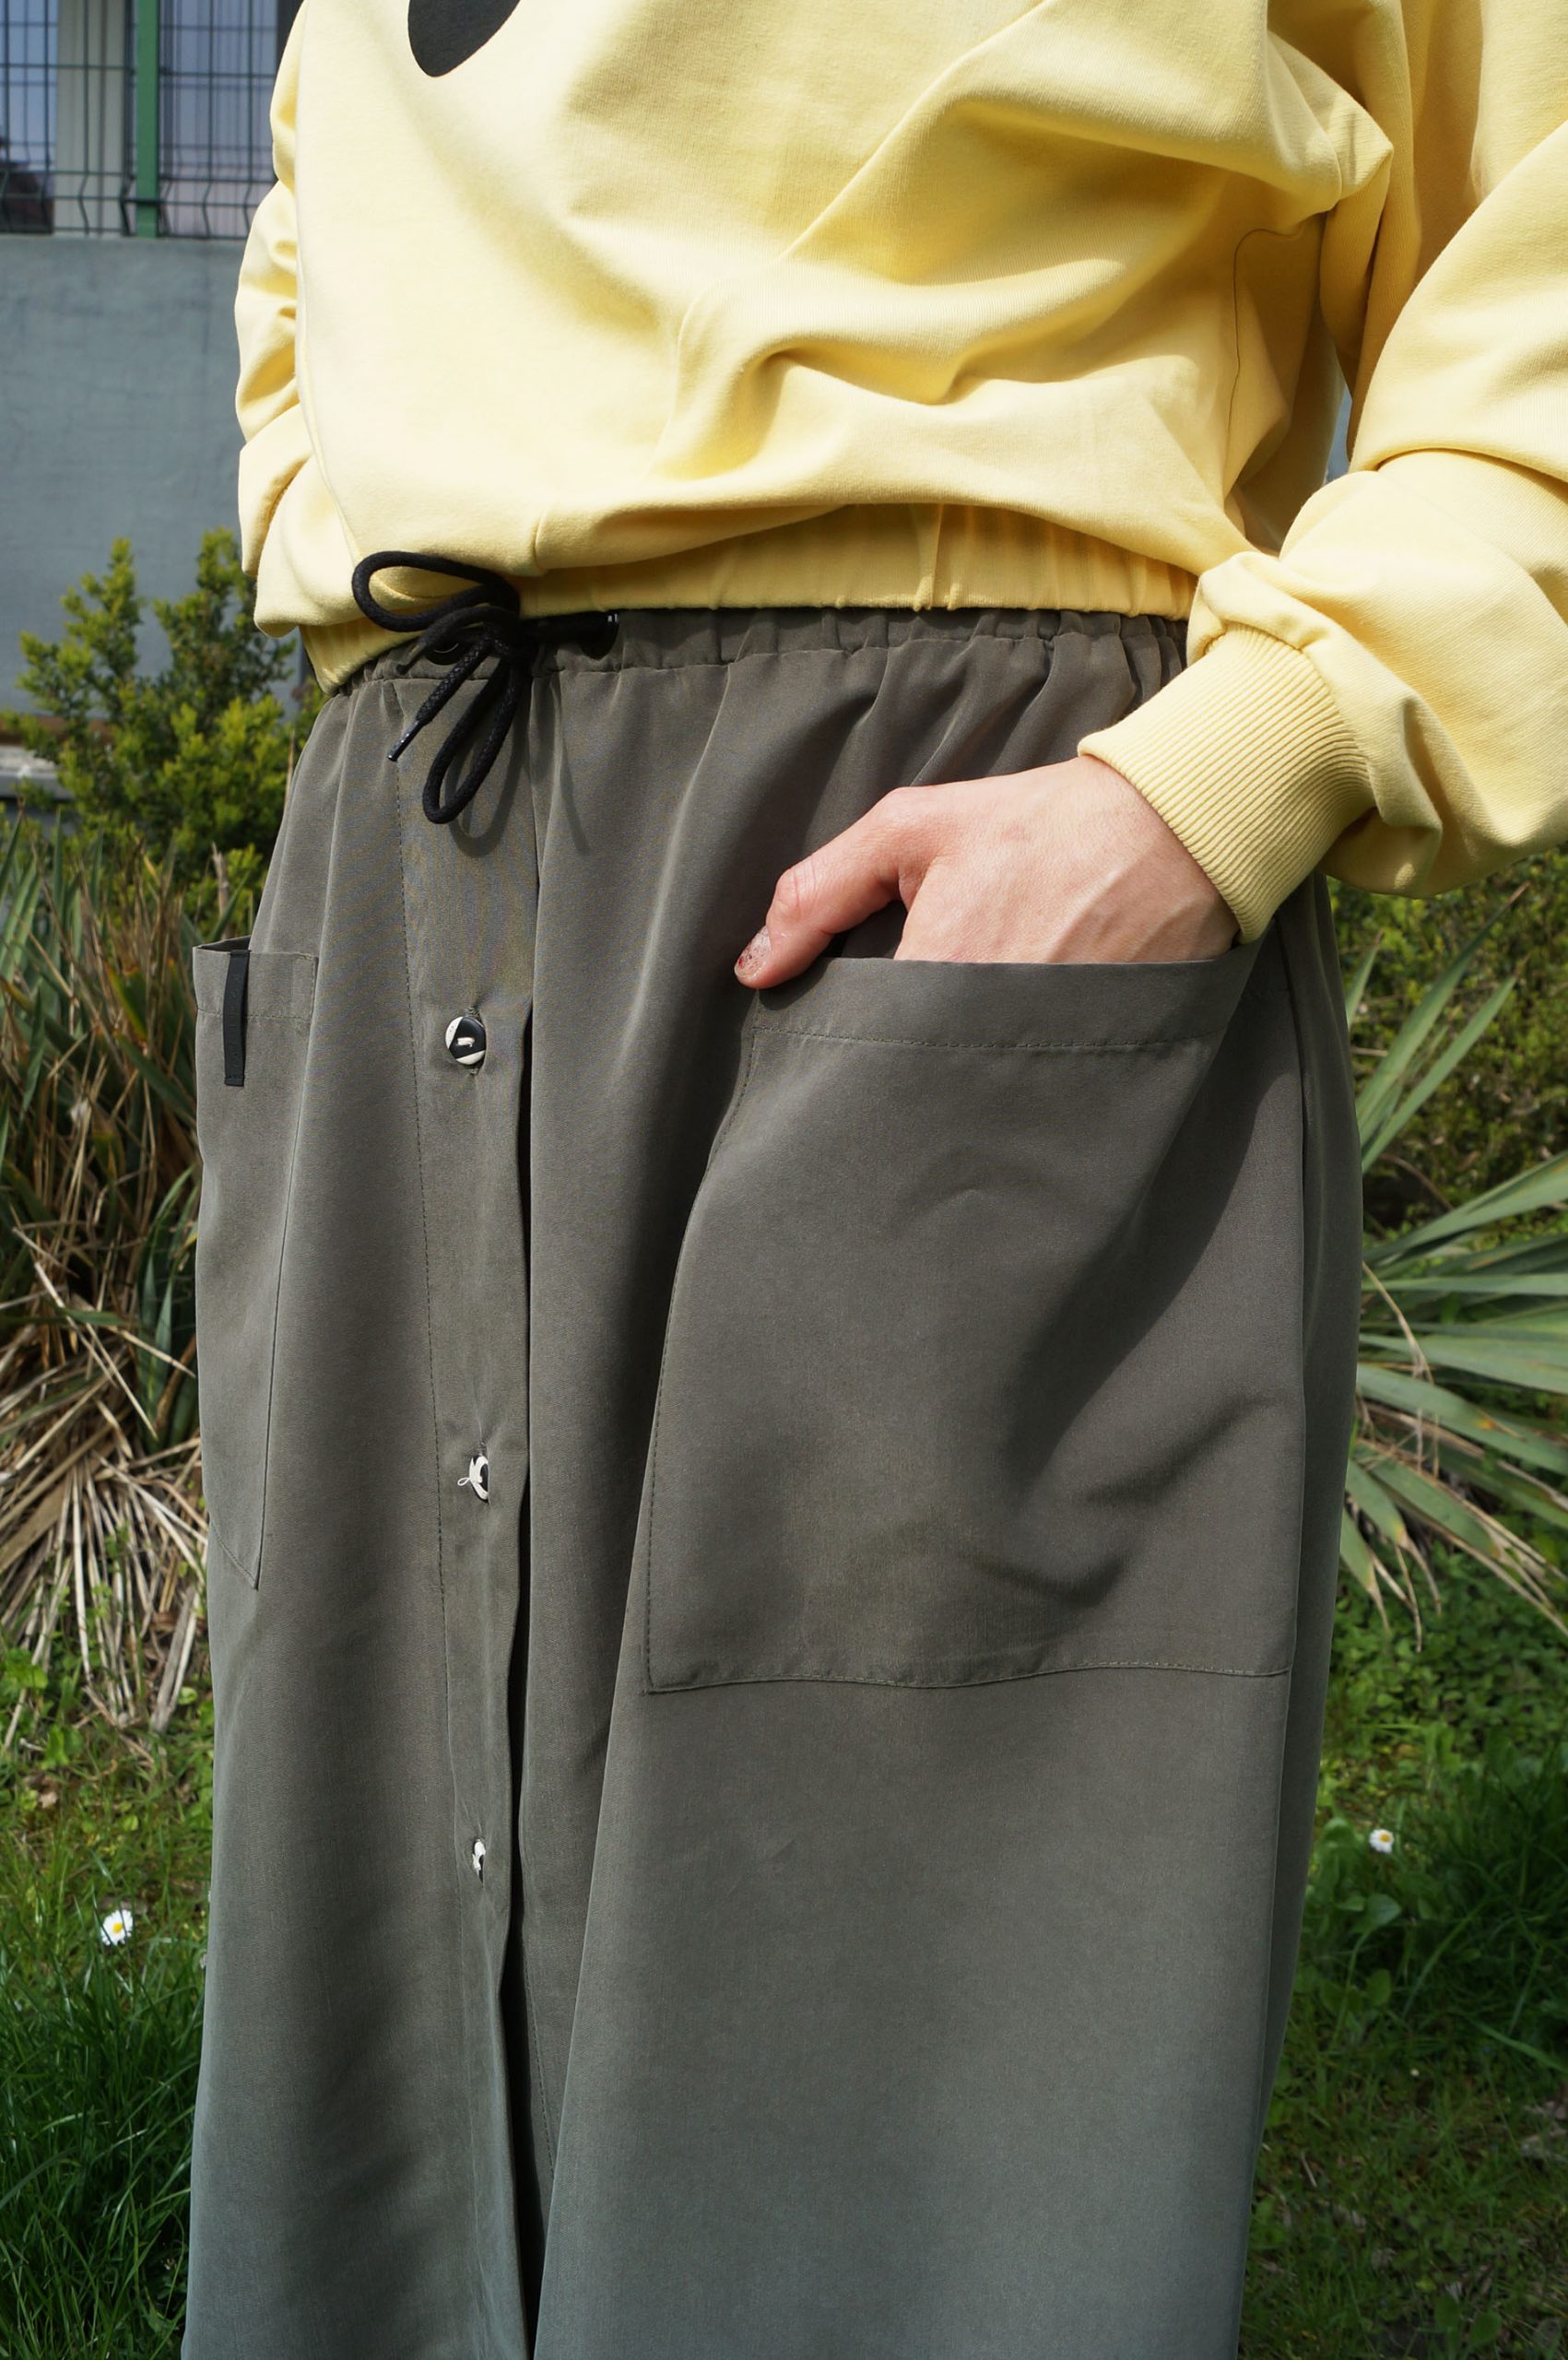 spódnica MECH- Długa damska spódnica w kolorze zieleni khaki/oliwkowej. Szyta ręcznie w polsce. Autorskie unikatowe wzorzyste guziki.